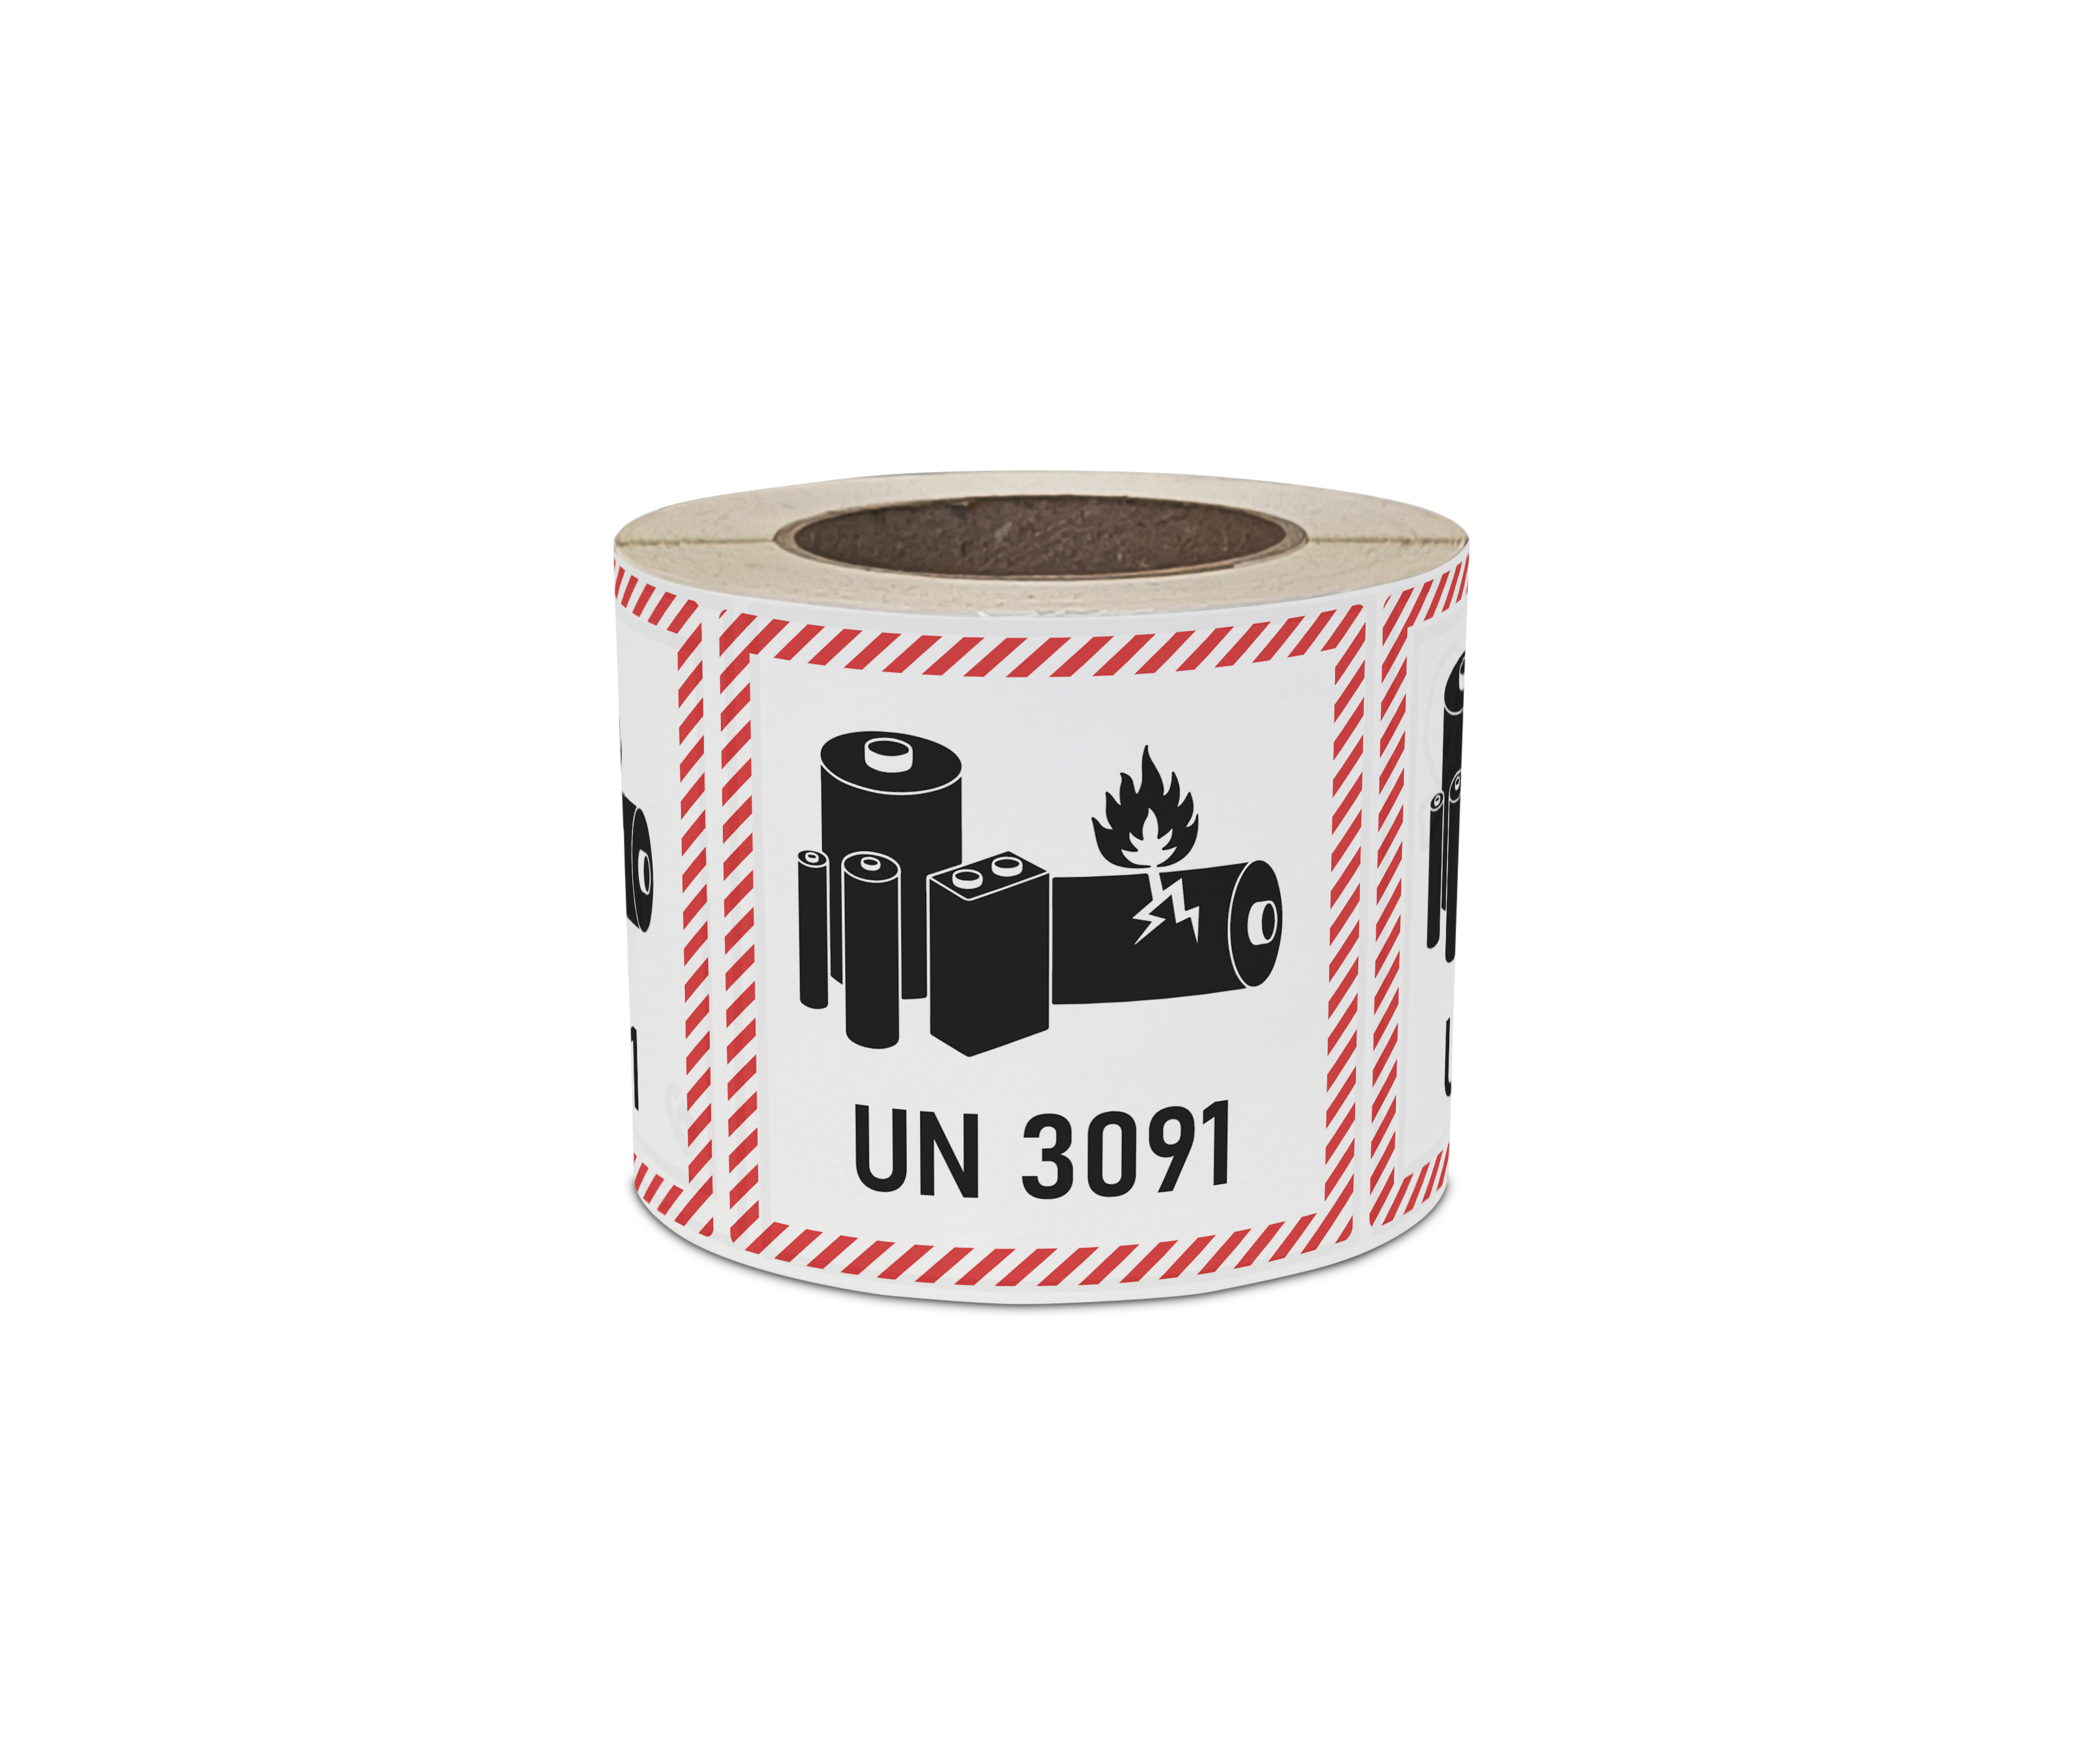 Sichere Transportkennzeichnung nach ADR Sondervorschrift 188 für UN3090 und Lithium-Ionen-Batterien. Hochwertige 100x100mm Kennzeichnung, 1 Stück pro Blatt. Vertrauen Sie BOXLAB Services für Gefahrgutkennzeichnung und sicheren Batterietransport.